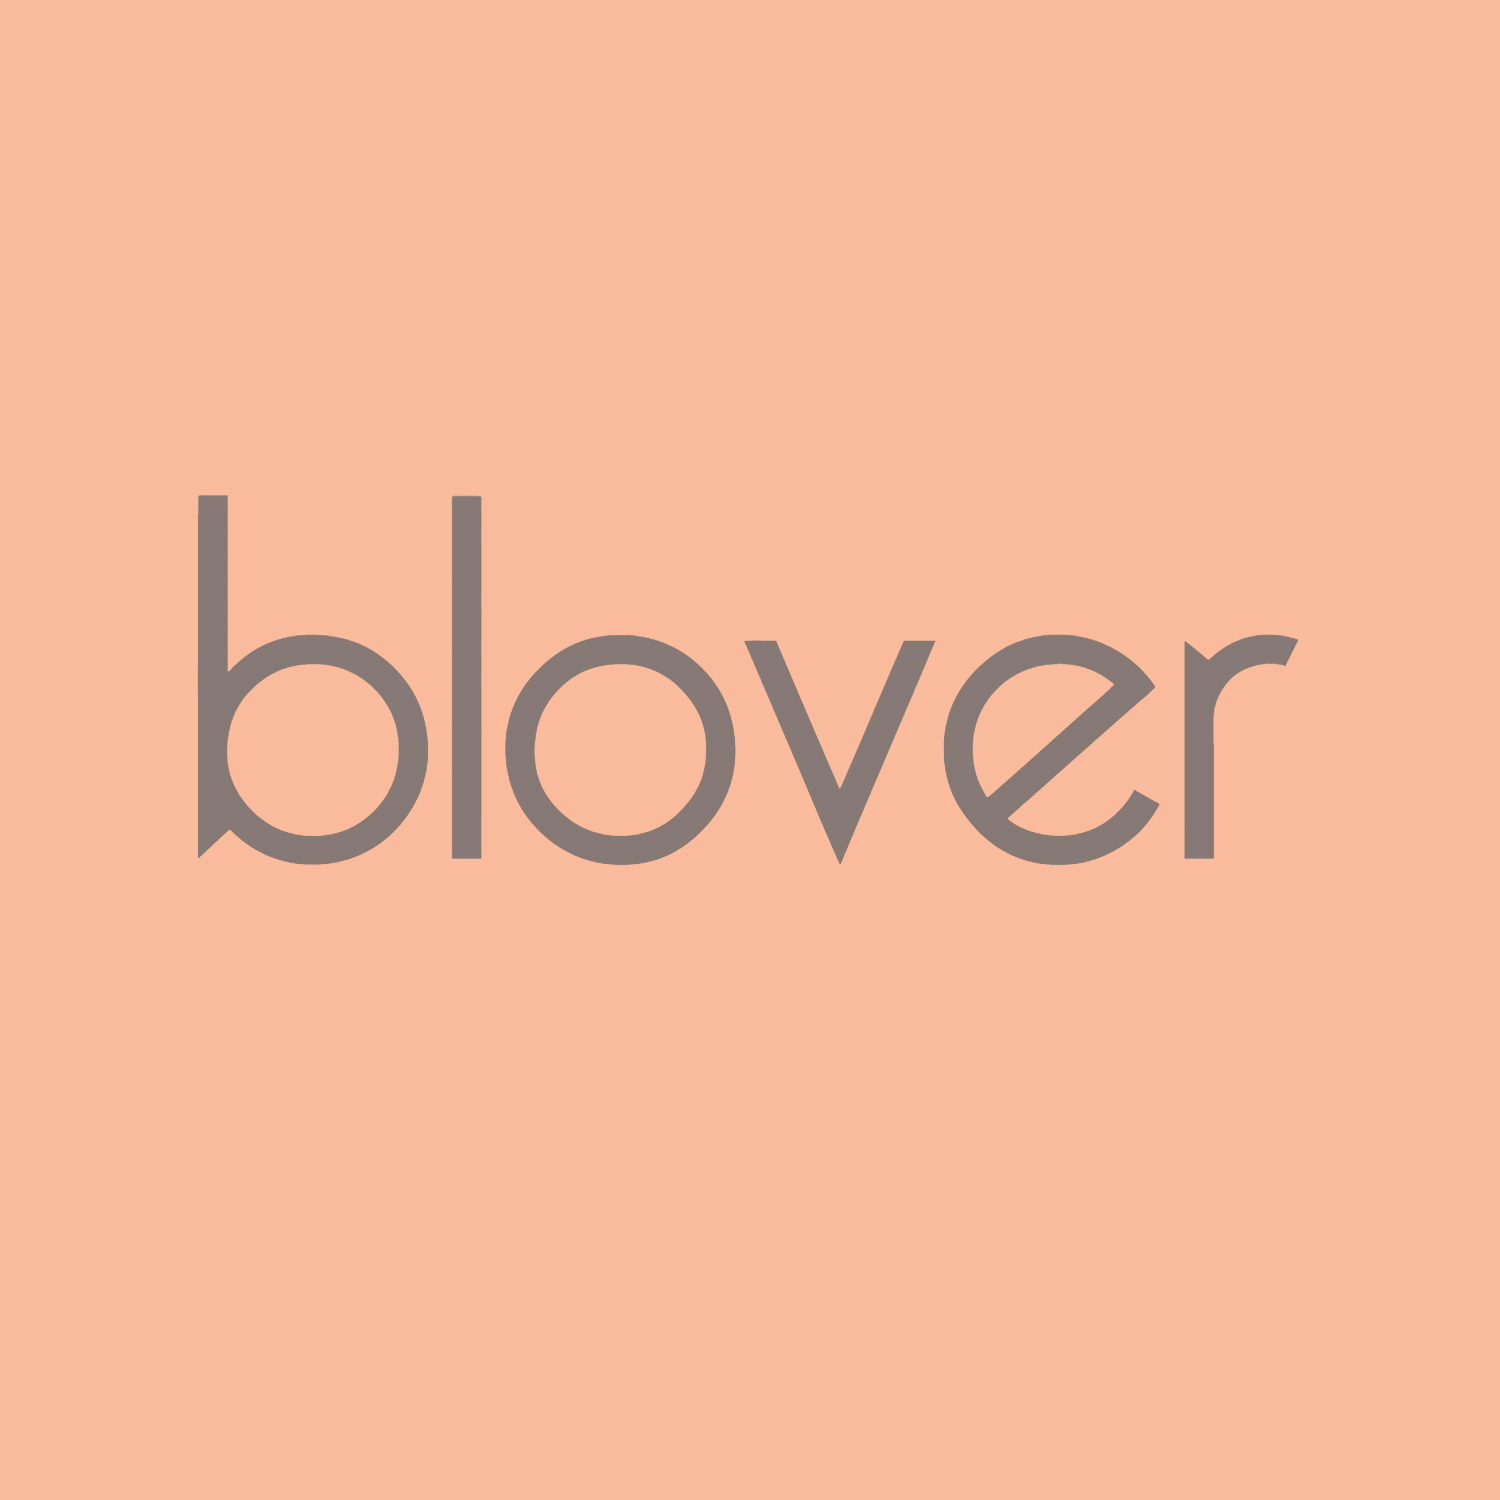 bolsos blover logo